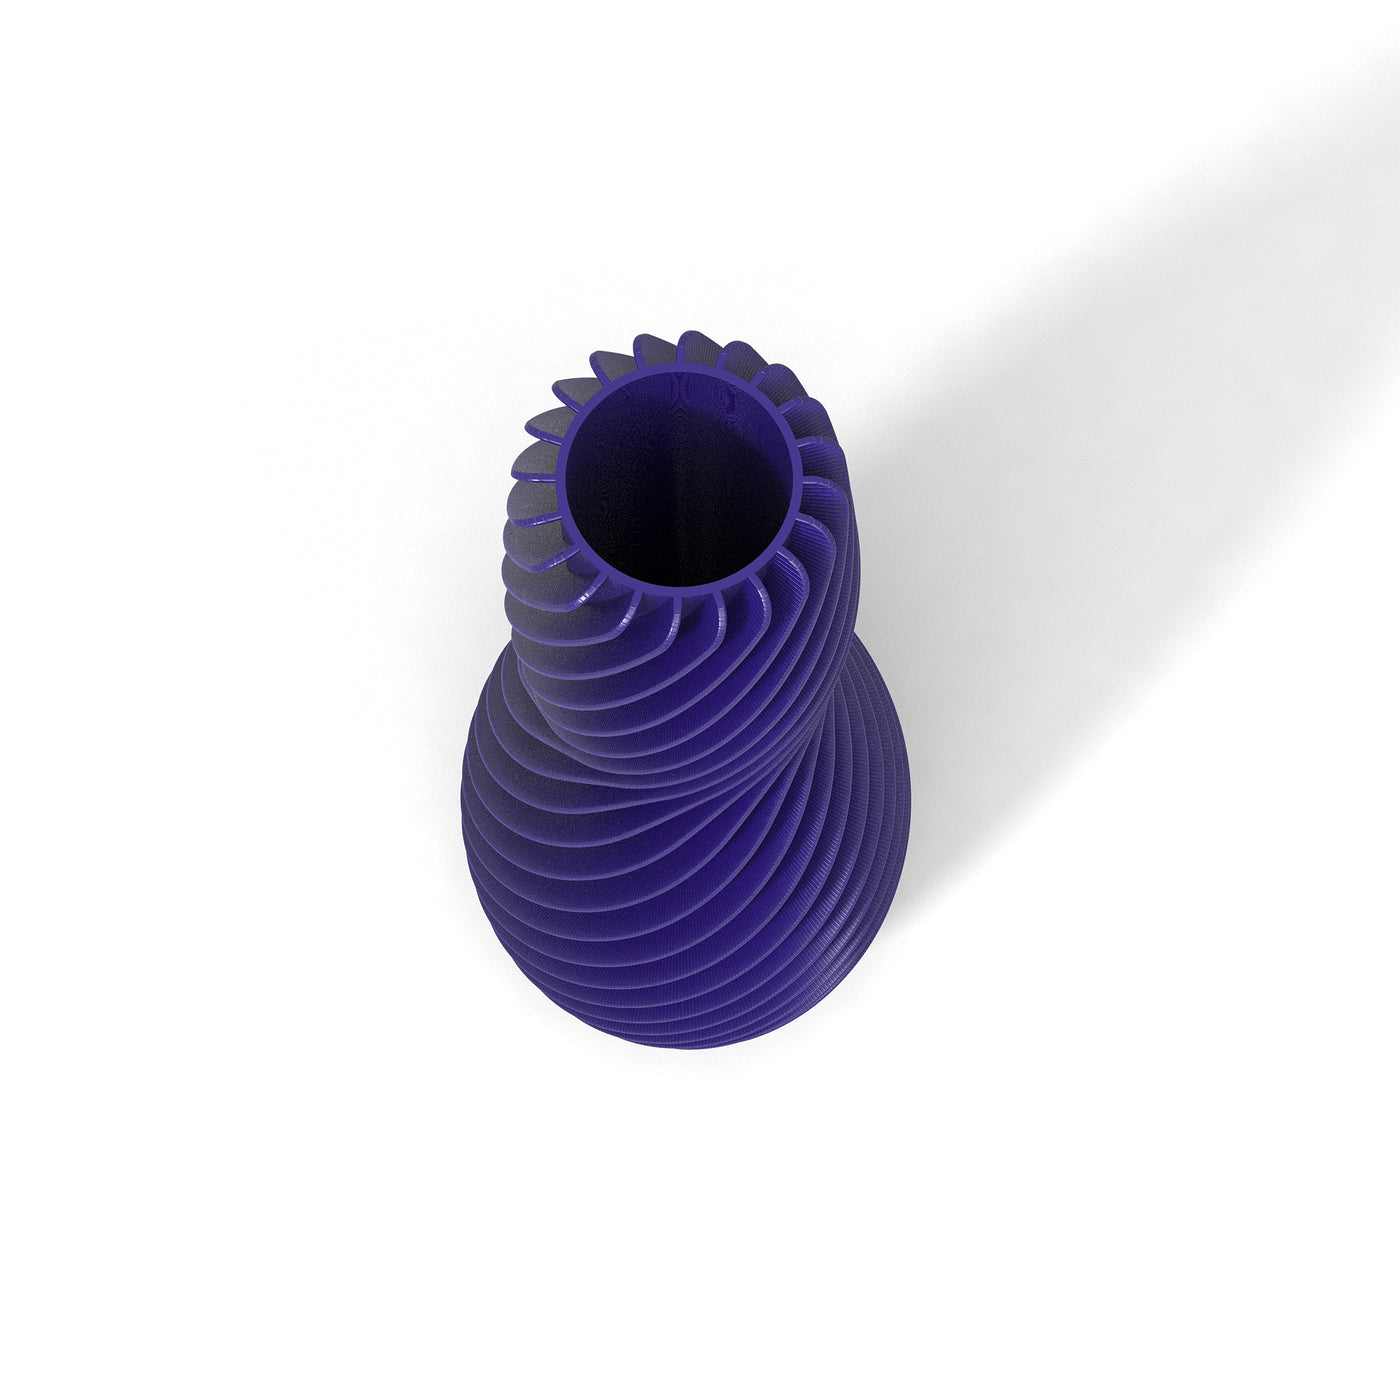 Fialová designová váza 3D print SPIRAL 4 zeshora